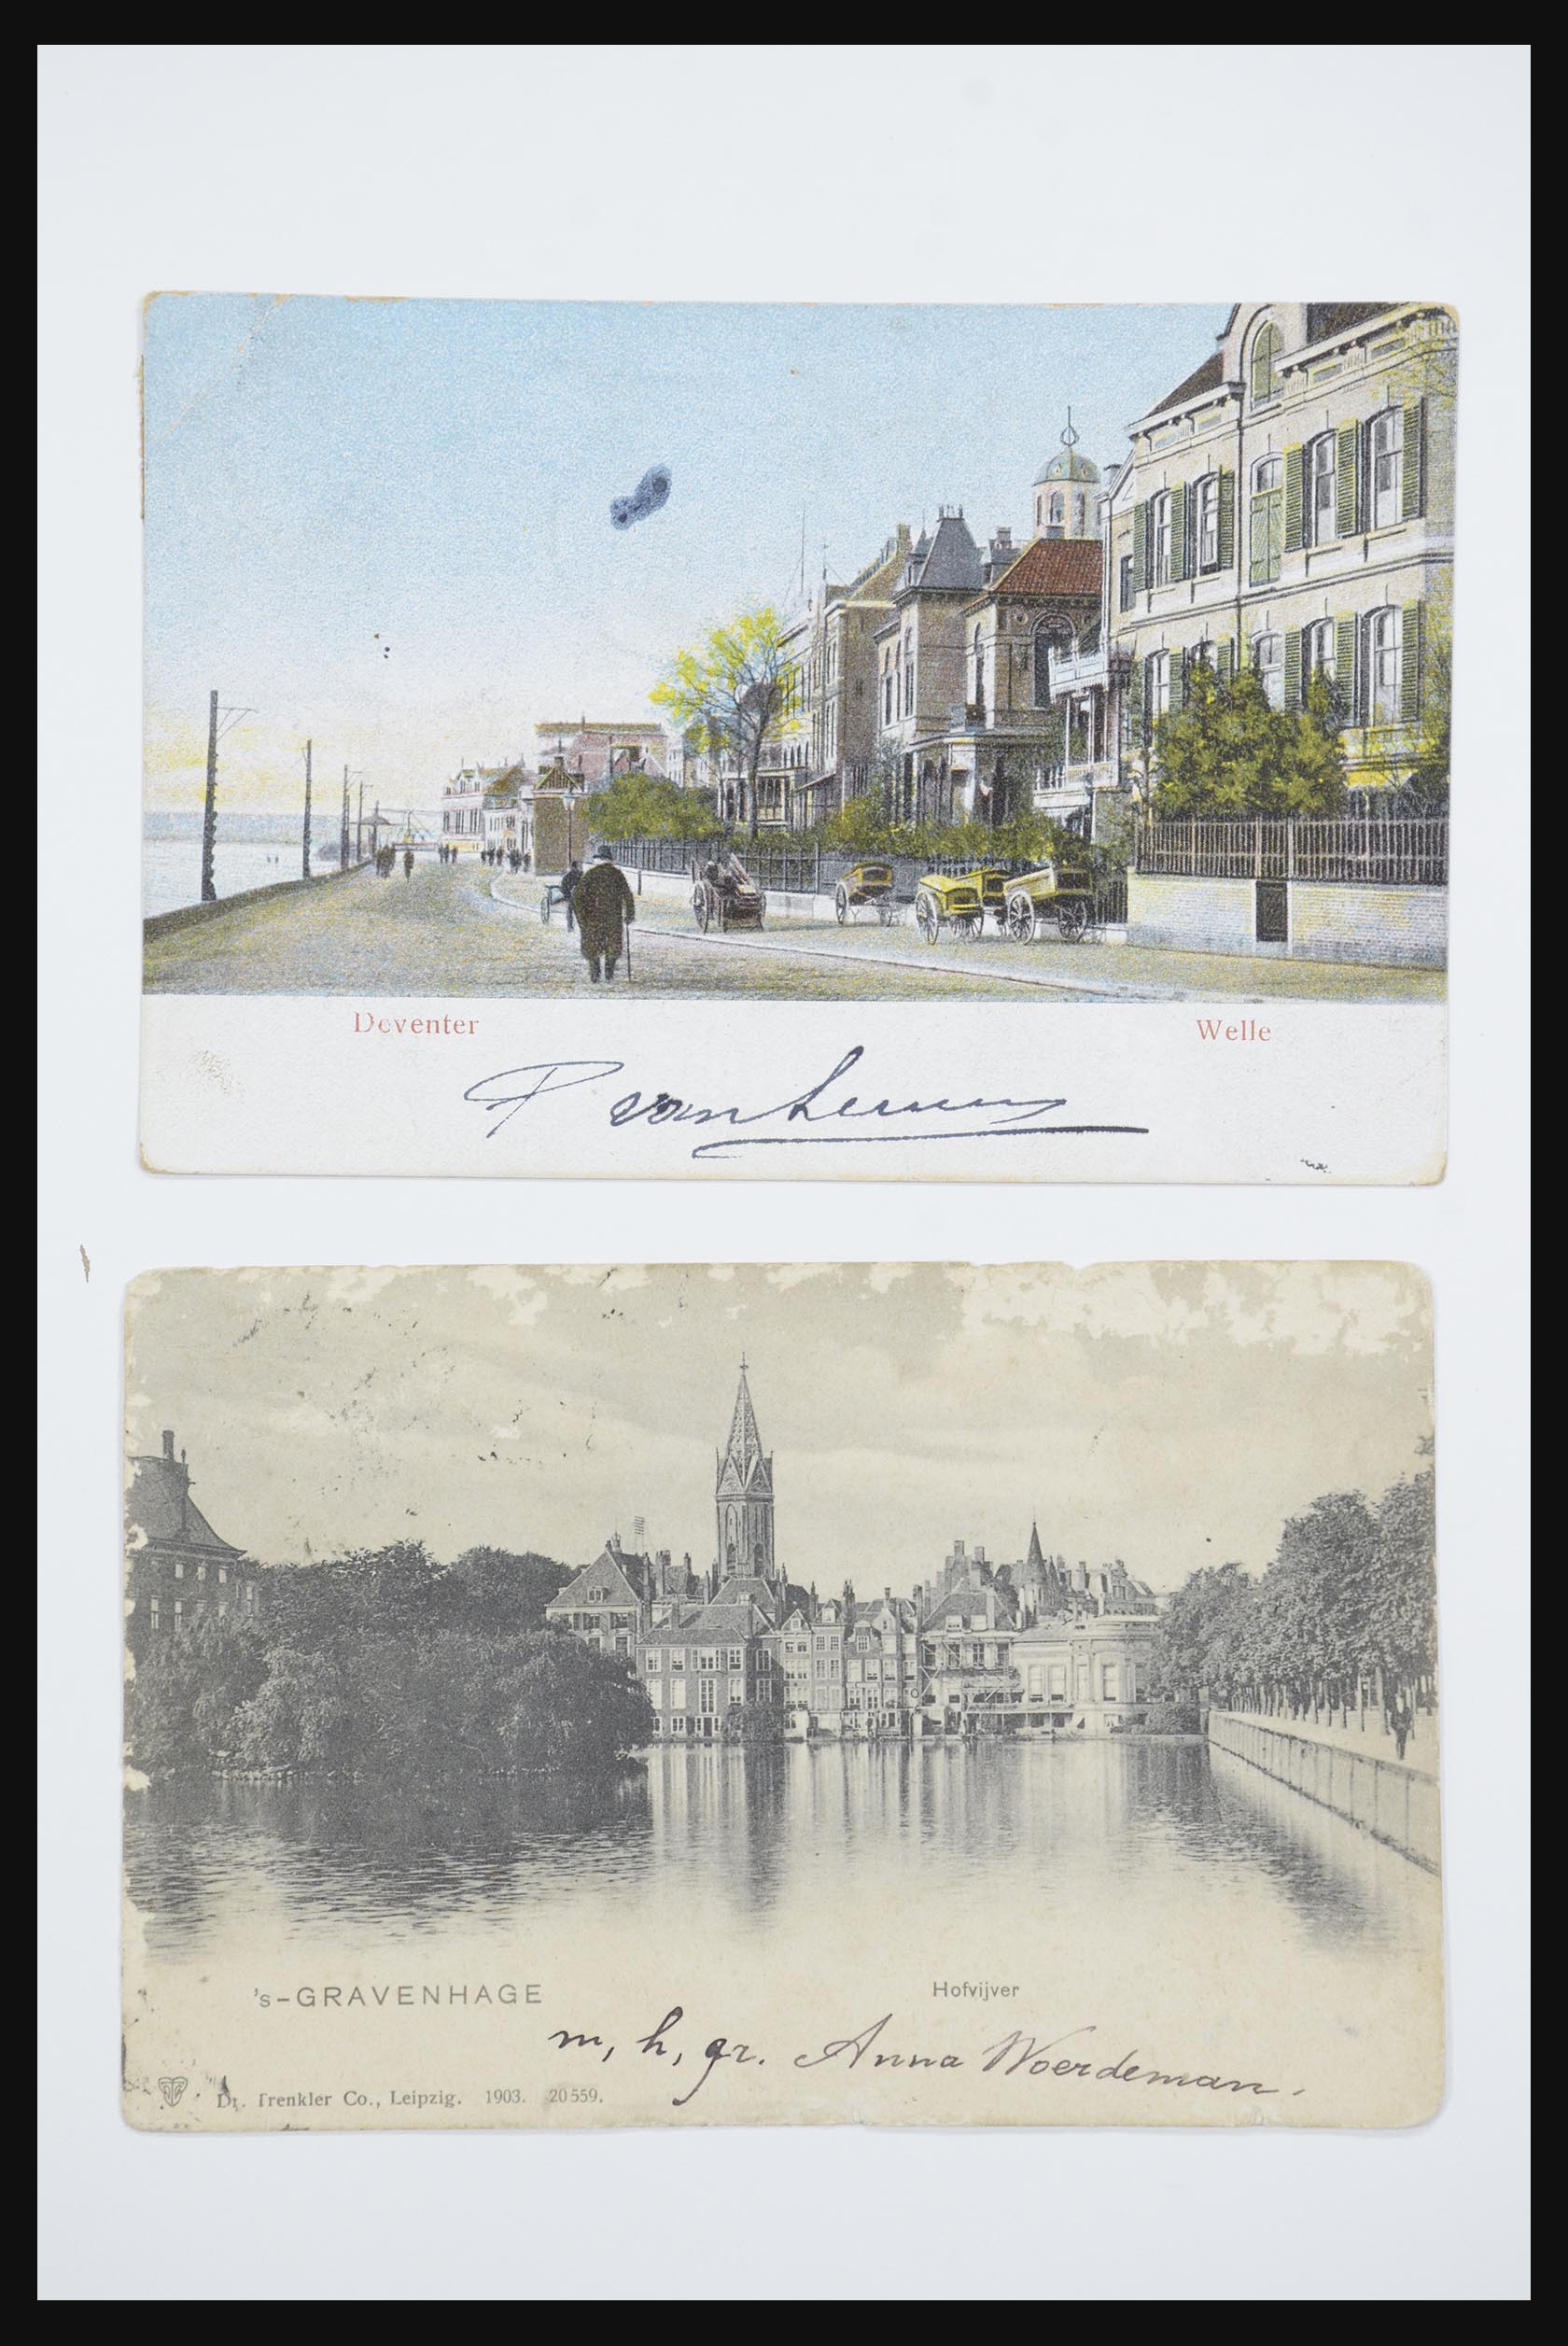 31668 066 - 31668 Nederland ansichtkaarten 1905-1935.